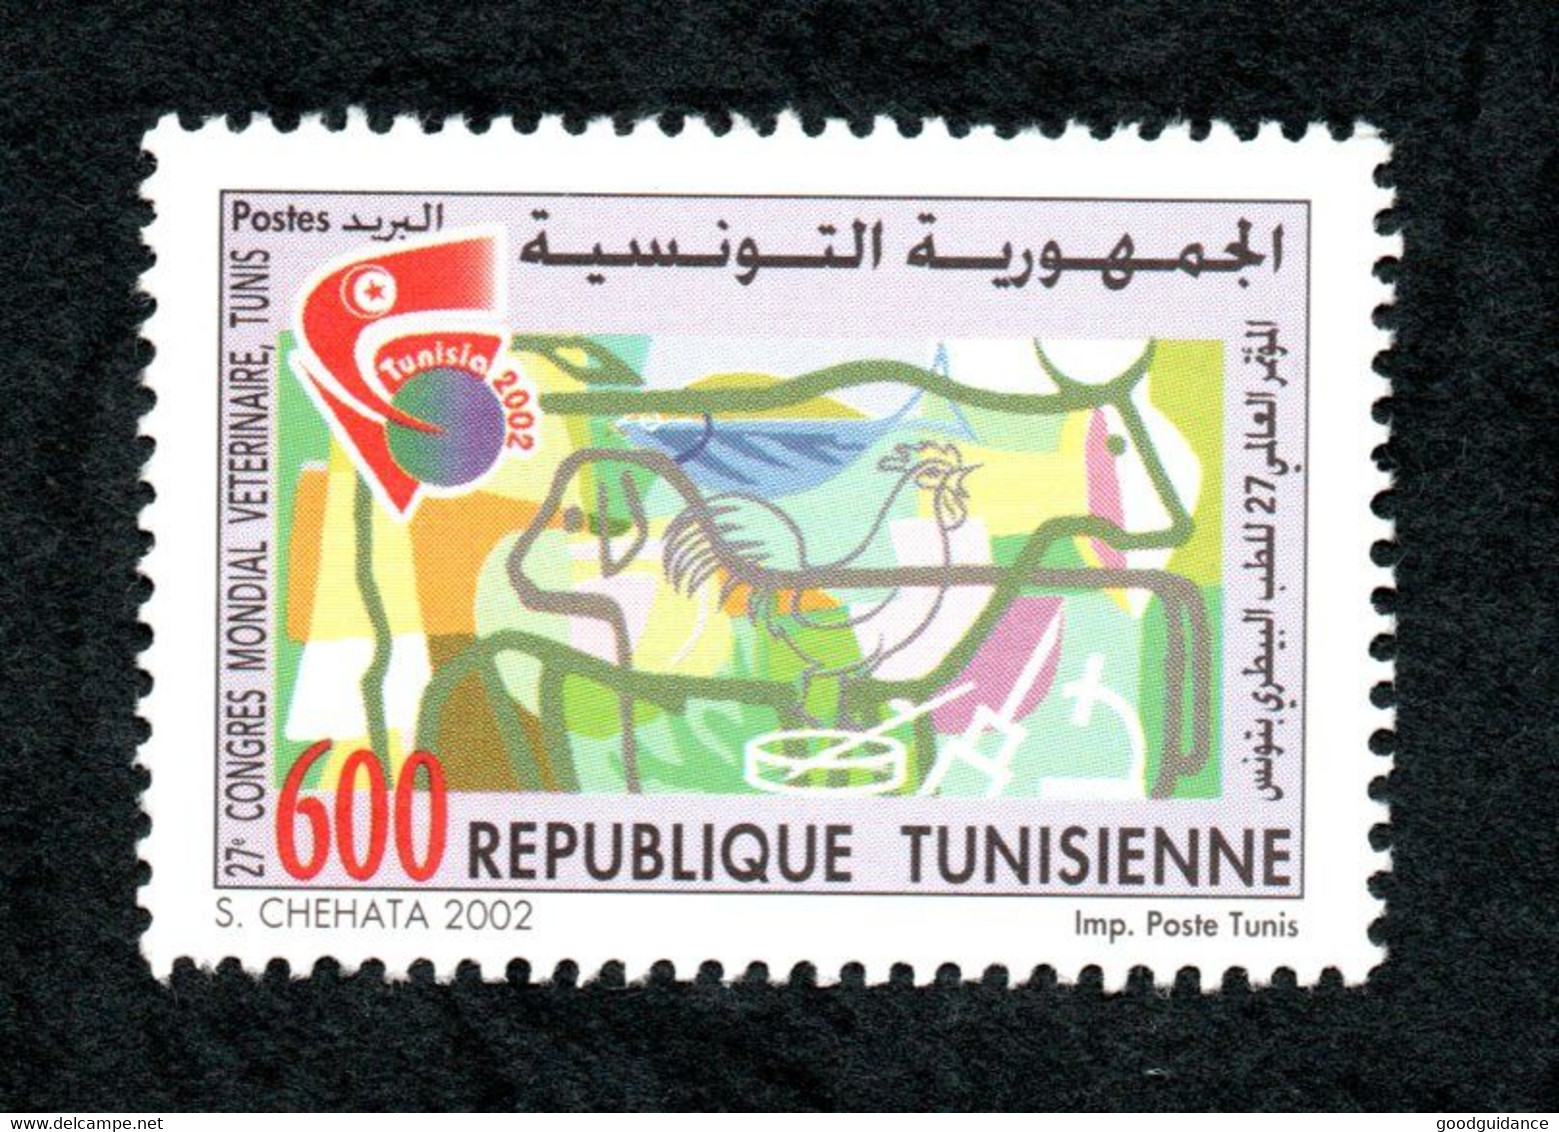 2002- Tunisie - 27ème Congrès Mondial Vétérinaire-Tunis 2002 -Série Complète 1v.MNH** - Médecine